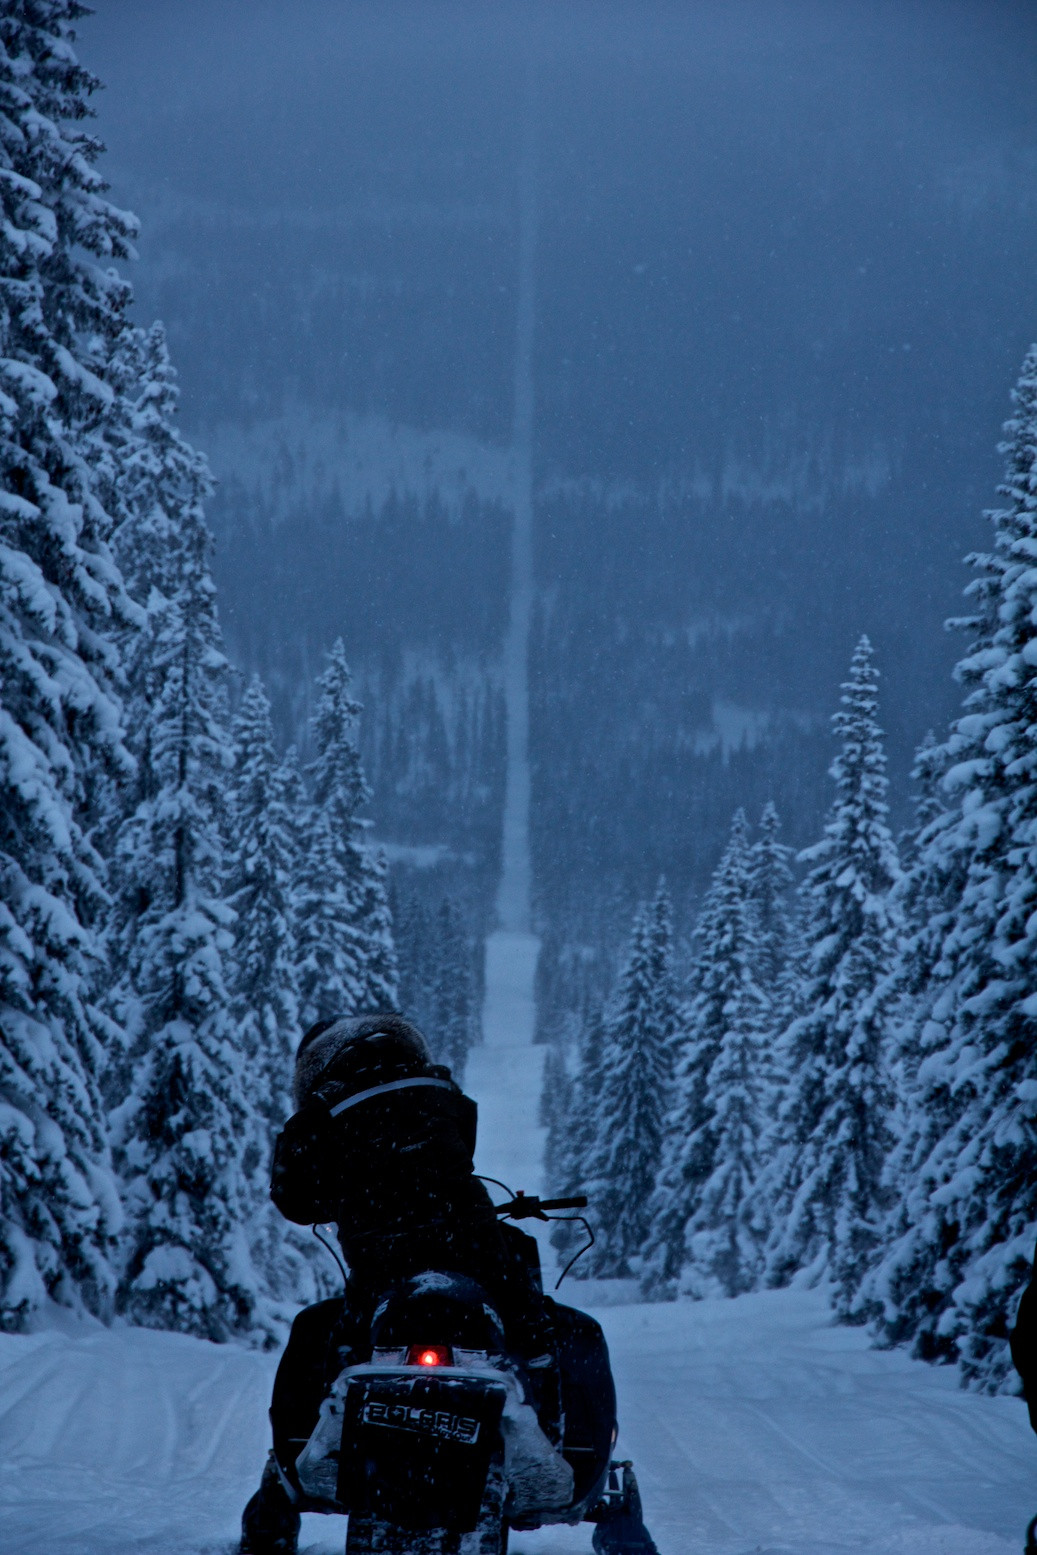 Border between Norway and Sweden.